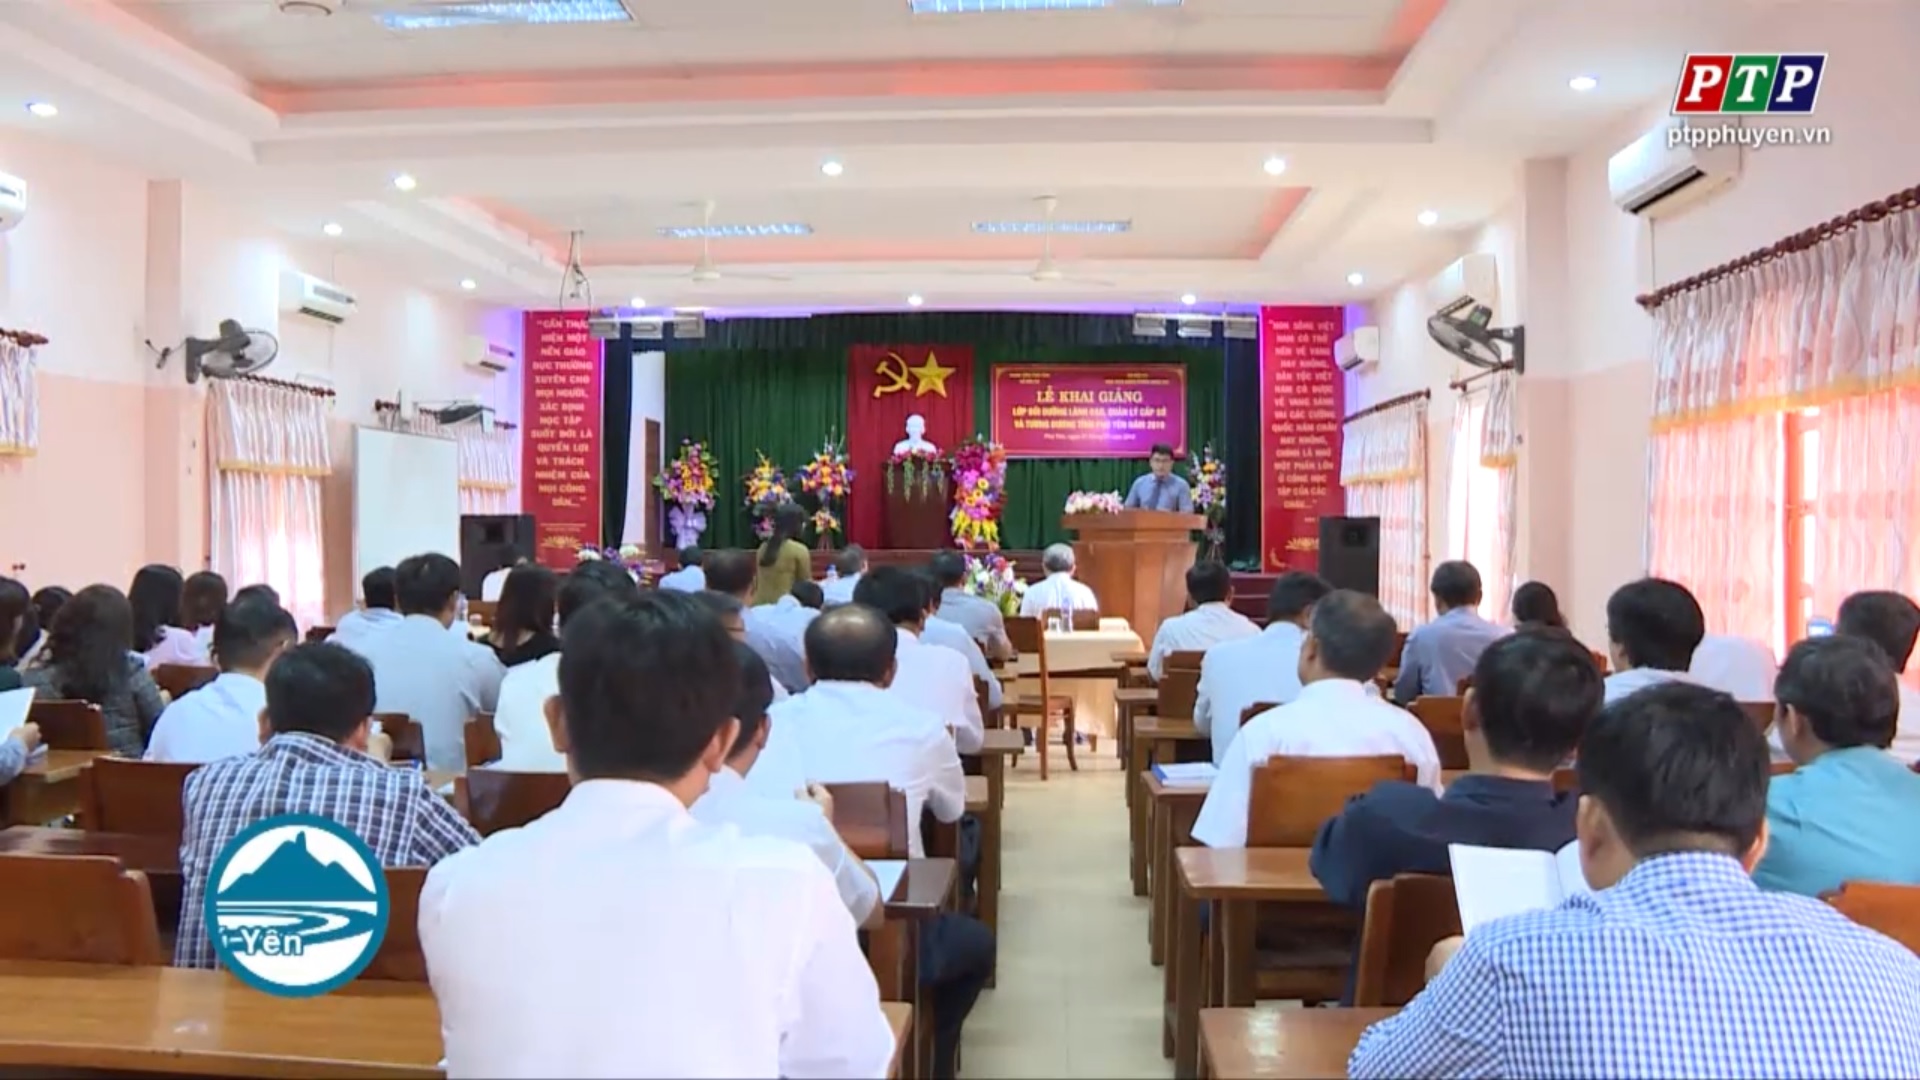 Khai giảng lớp bồi dưỡng lãnh đạo quản lý cấp sở và tương đương năm 2019 tại Phú Yên